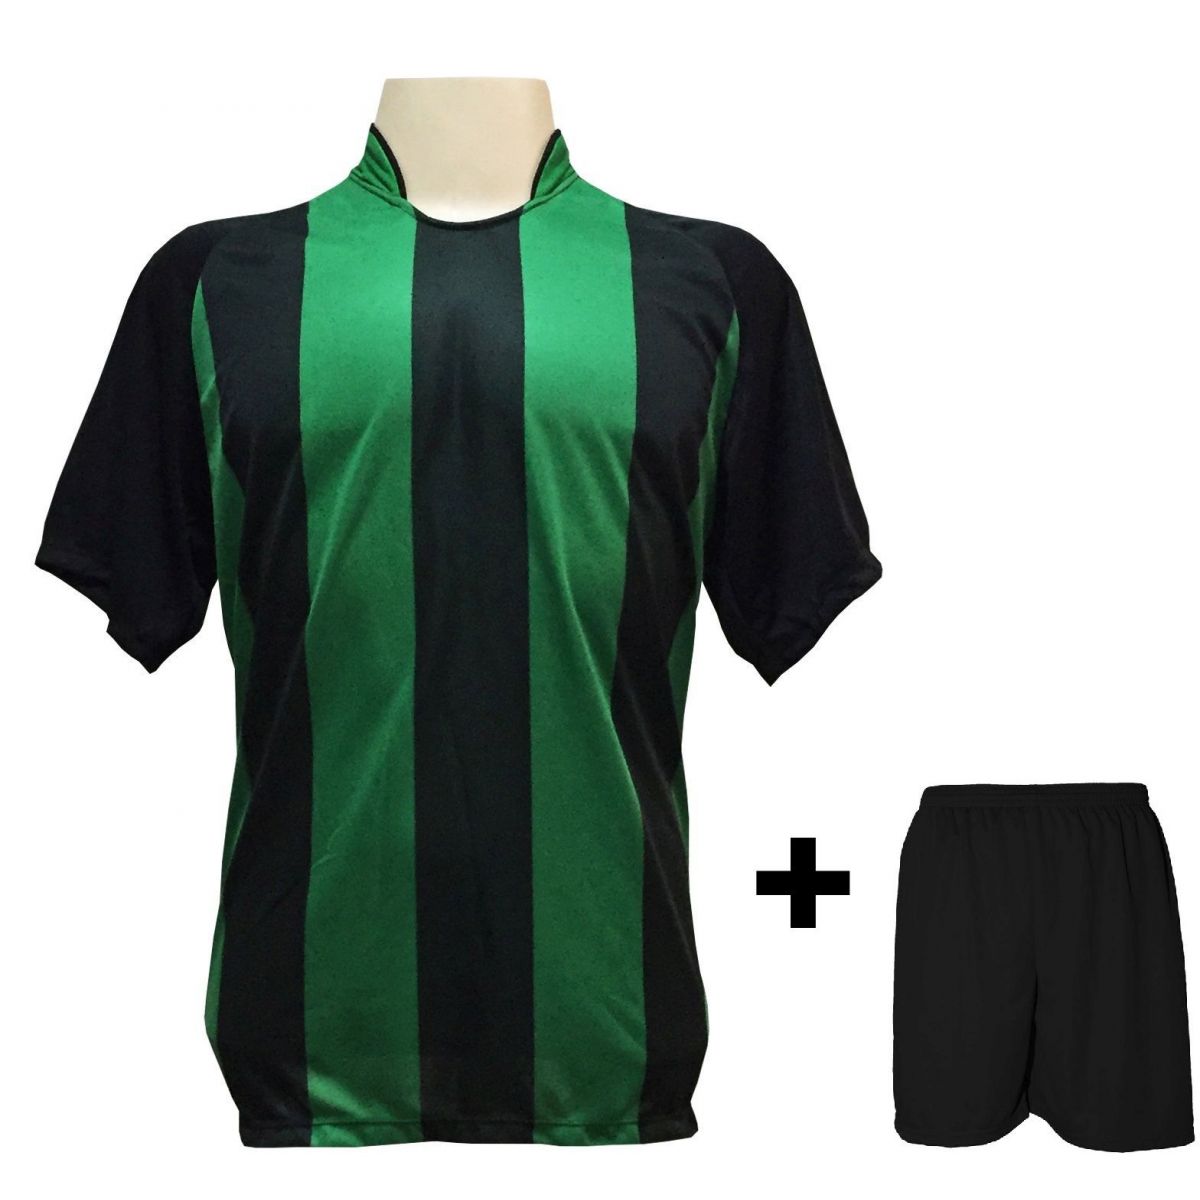 Uniforme Esportivo com 12 camisas modelo Milan Preto/Verde + 12 calções modelo Madrid Preto + Brindes